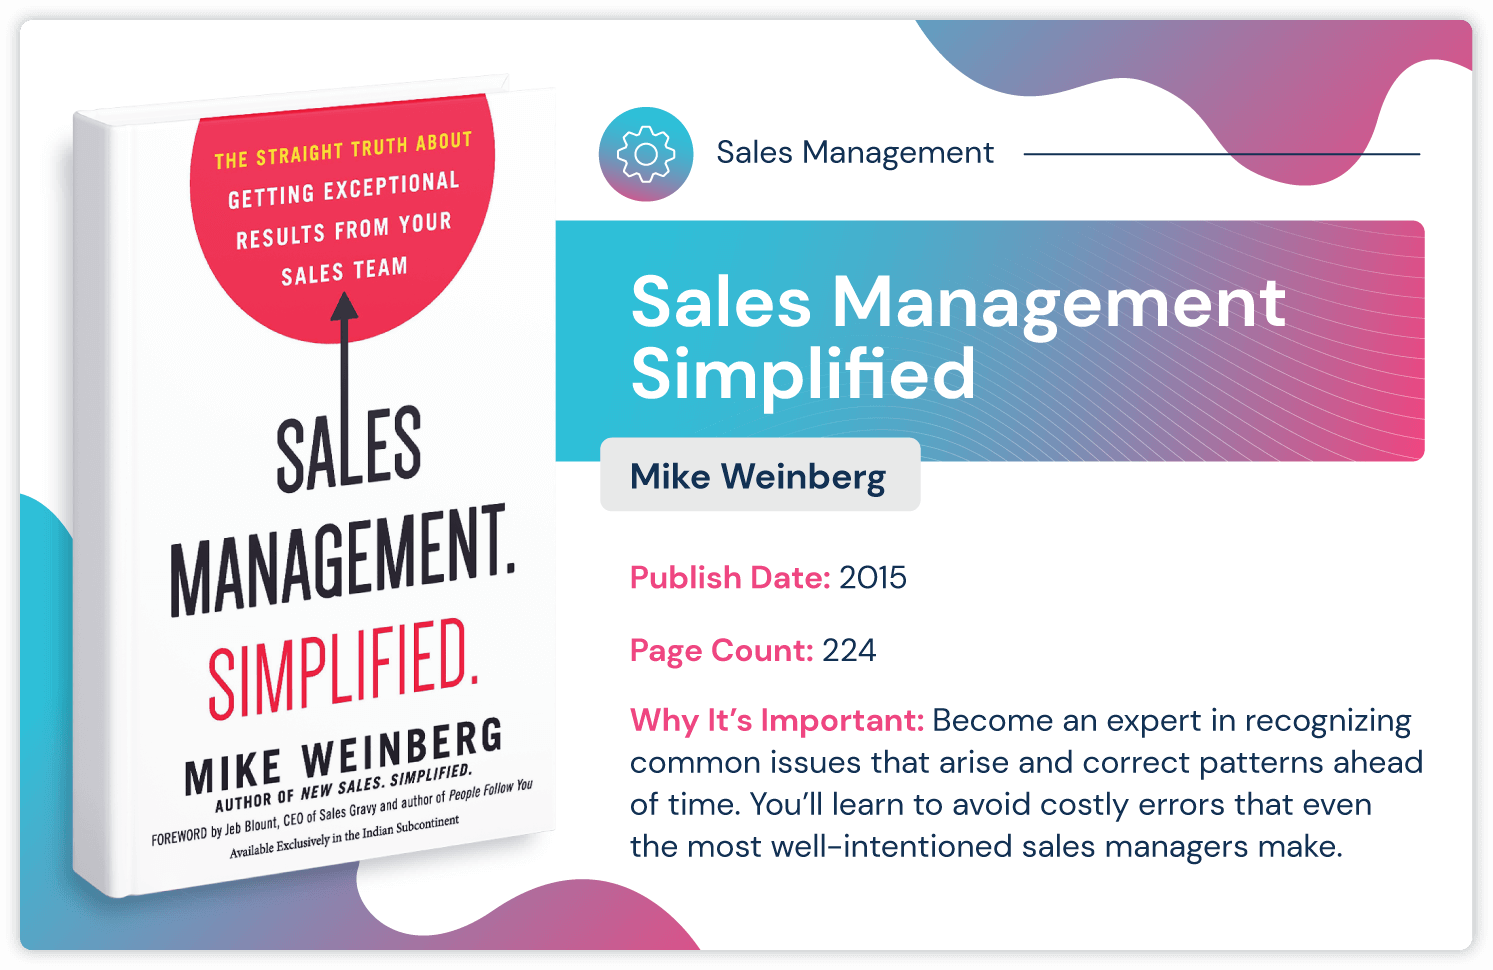 Verkaufsmanagementbuch mit dem Titel „Sales Management Simplified“ von Mike Weinberg über die Vermeidung kostspieliger Fehler im Vertriebsmanagement. Veröffentlicht im Jahr 2015 und 224 Seiten lang